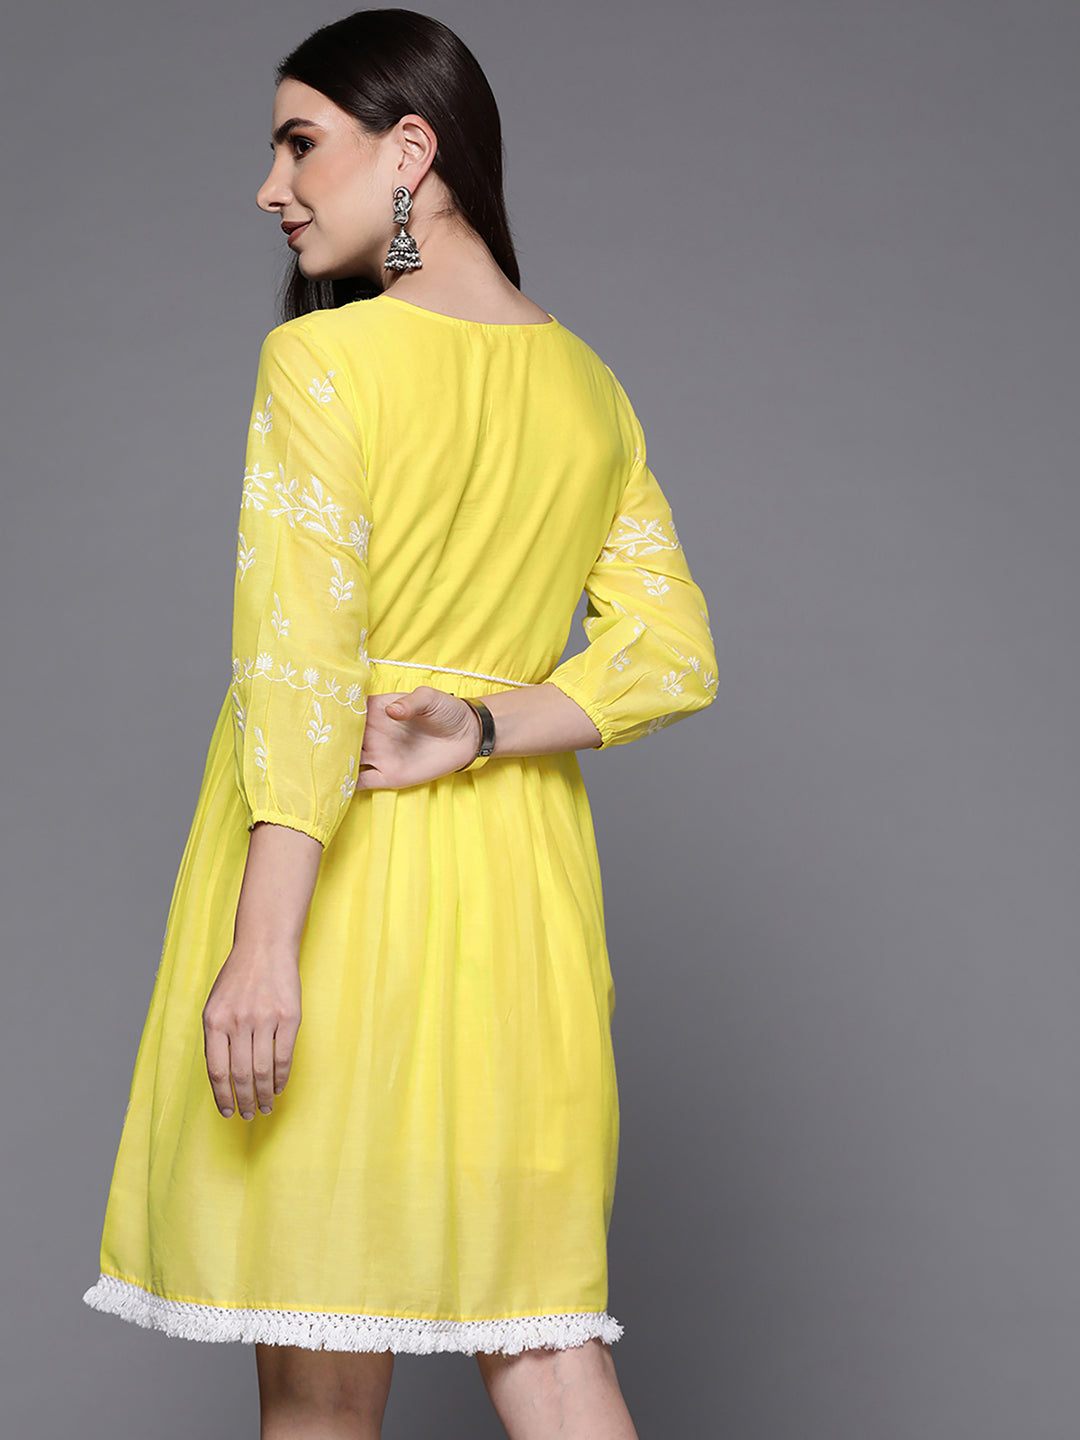 God Bless Women Ethnic Dress Yellow Dress - Buy God Bless Women Ethnic  Dress Yellow Dress Online at Best Prices in India | Flipkart.com